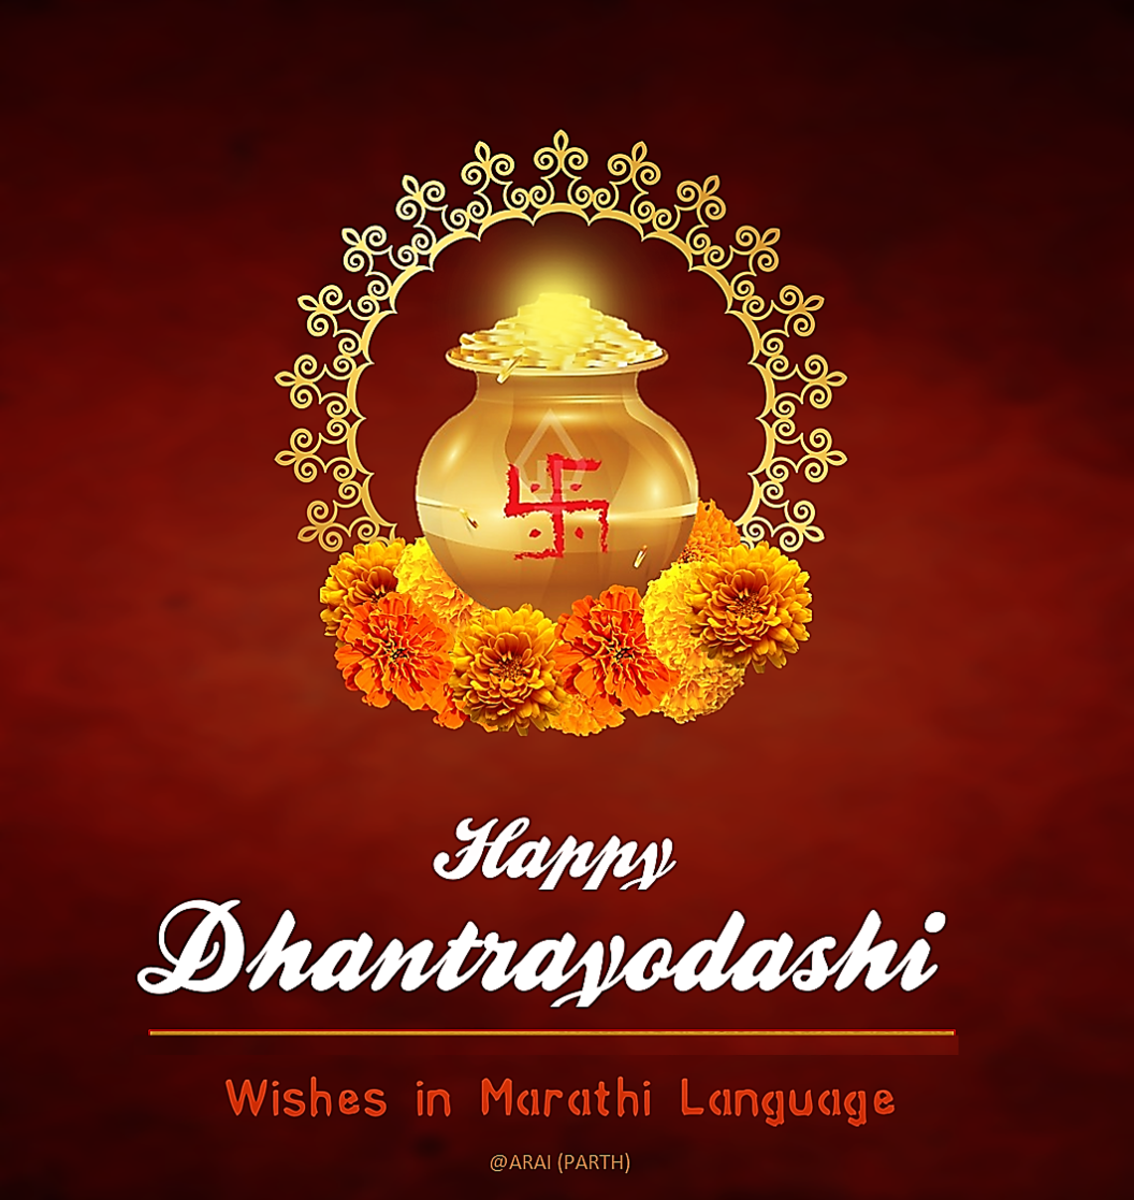 Dhantrayodashi (Dhanteras) Wishes and Greetings in Marathi Language